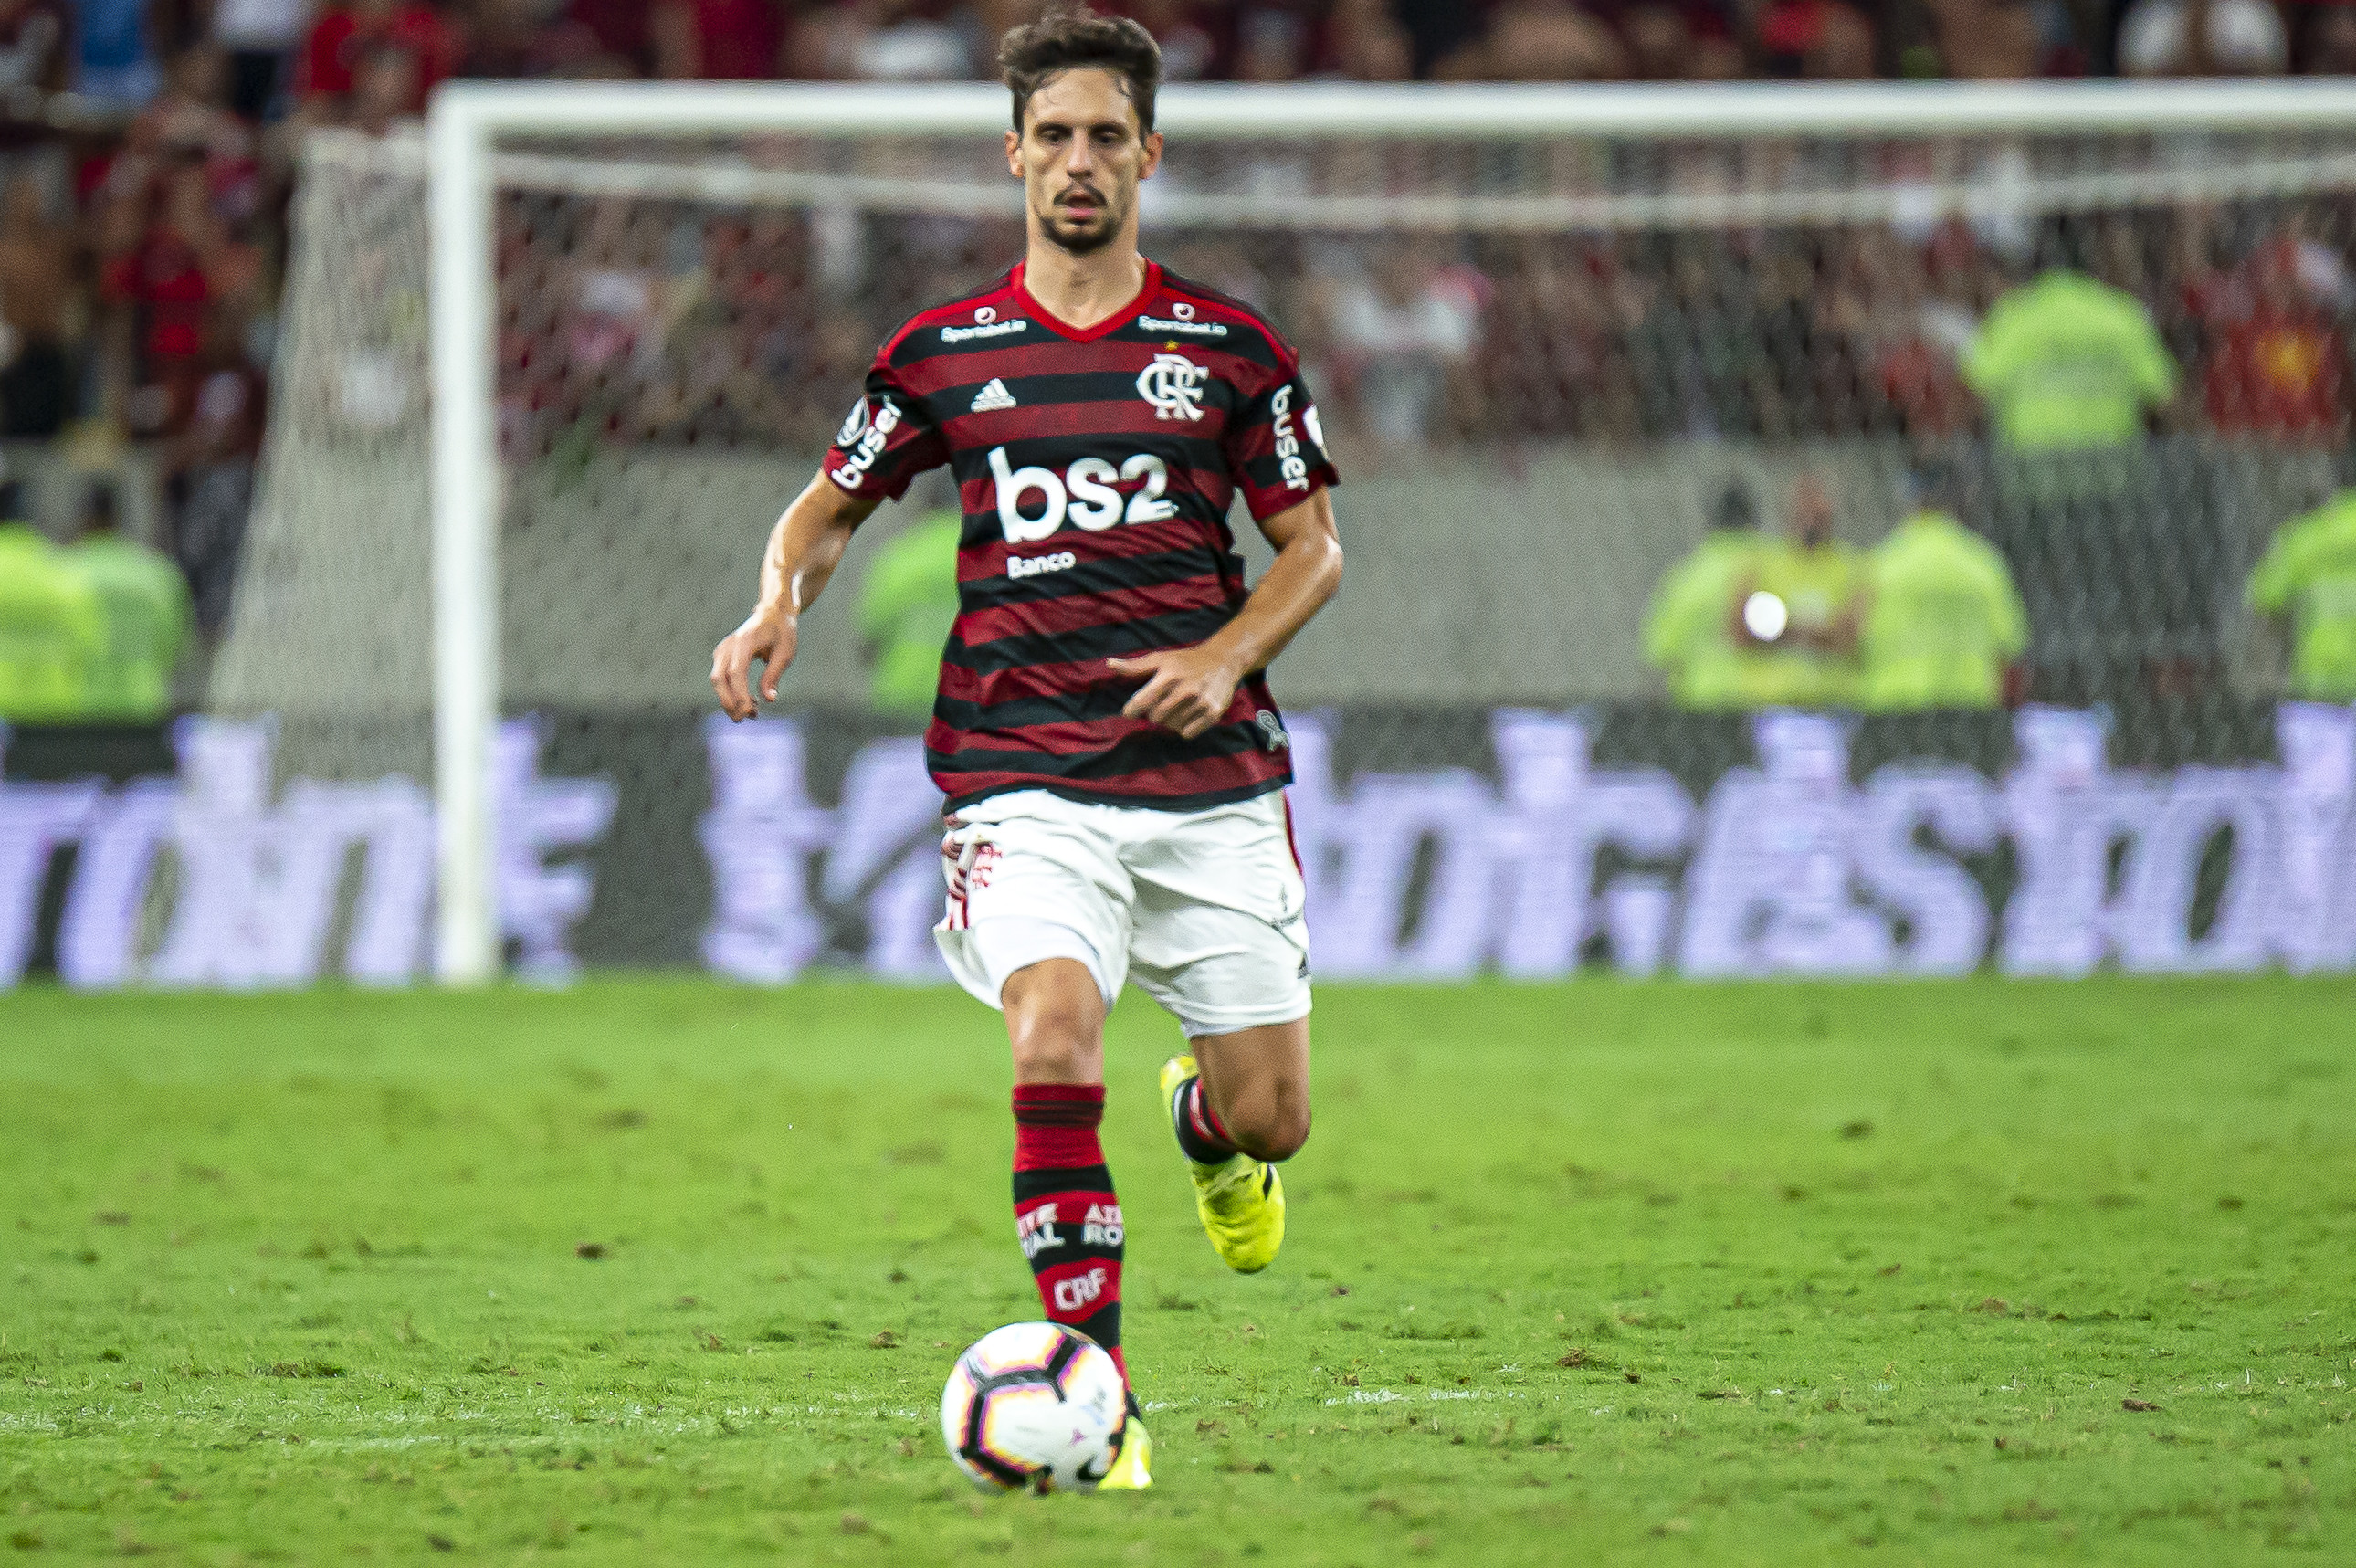 RODRIGO CAIO- Flamengo (C$ 9,73) - Também apresenta uma média de dois desarmes por partida e atuando numa equipe considerada favorita pra rodada, tem grandes chances de manter a sua boa média no Cartola.